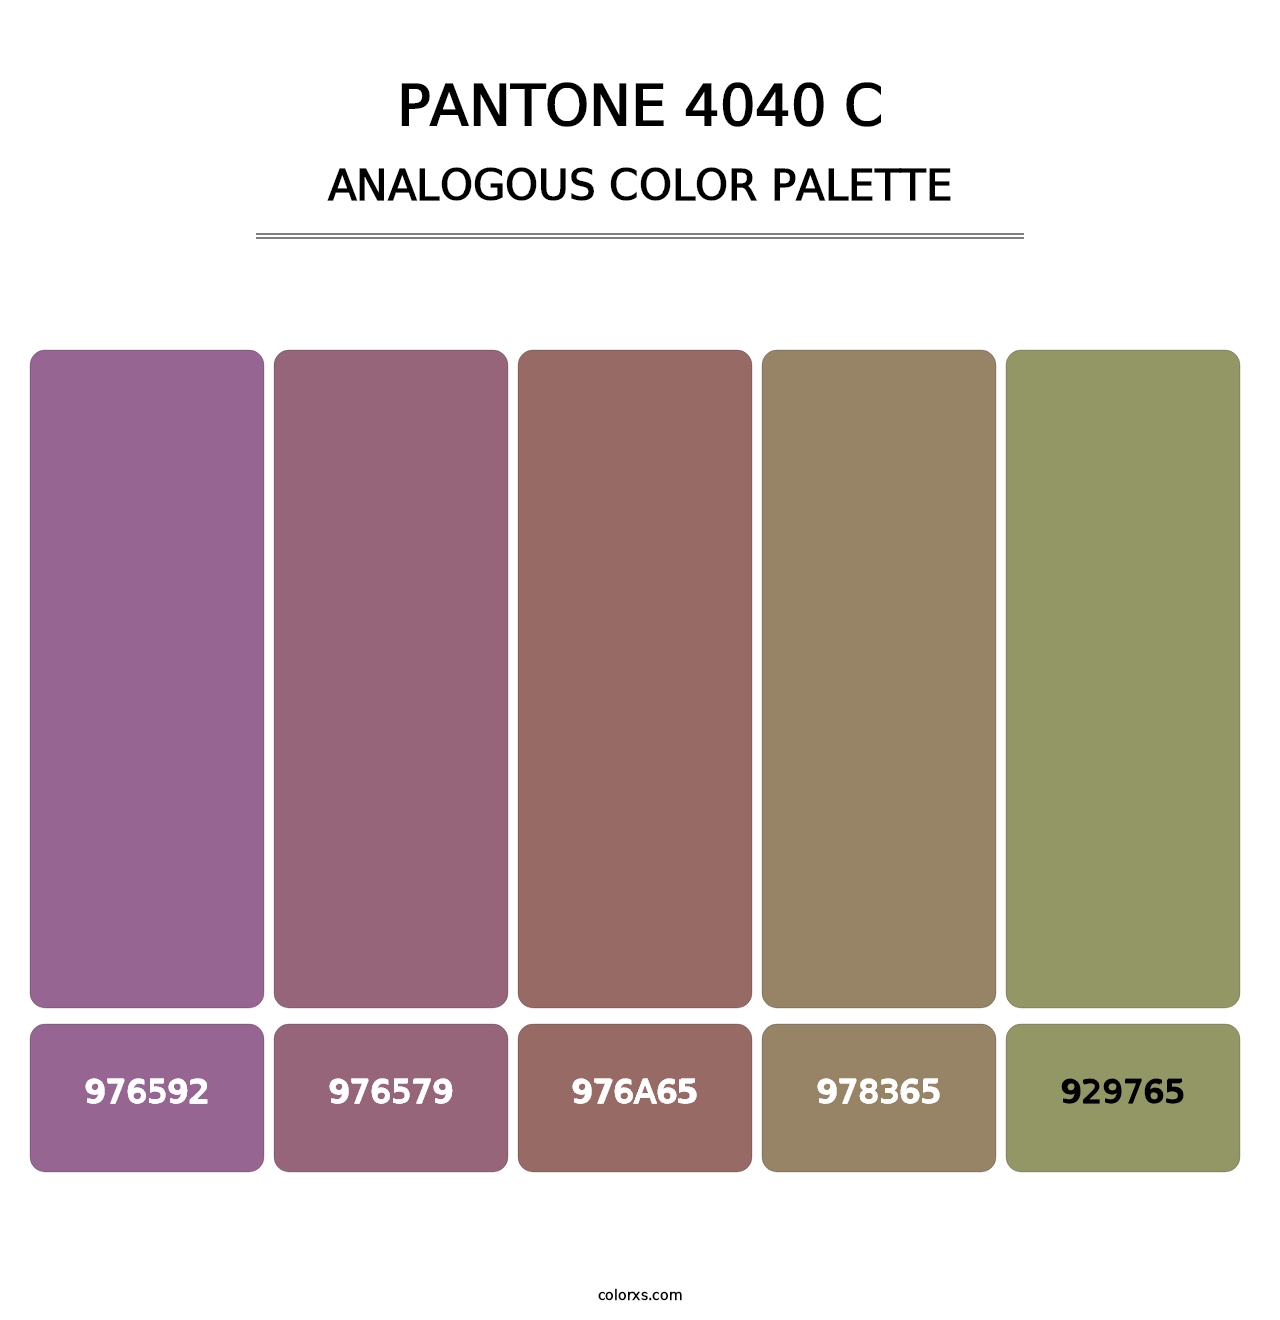 PANTONE 4040 C - Analogous Color Palette